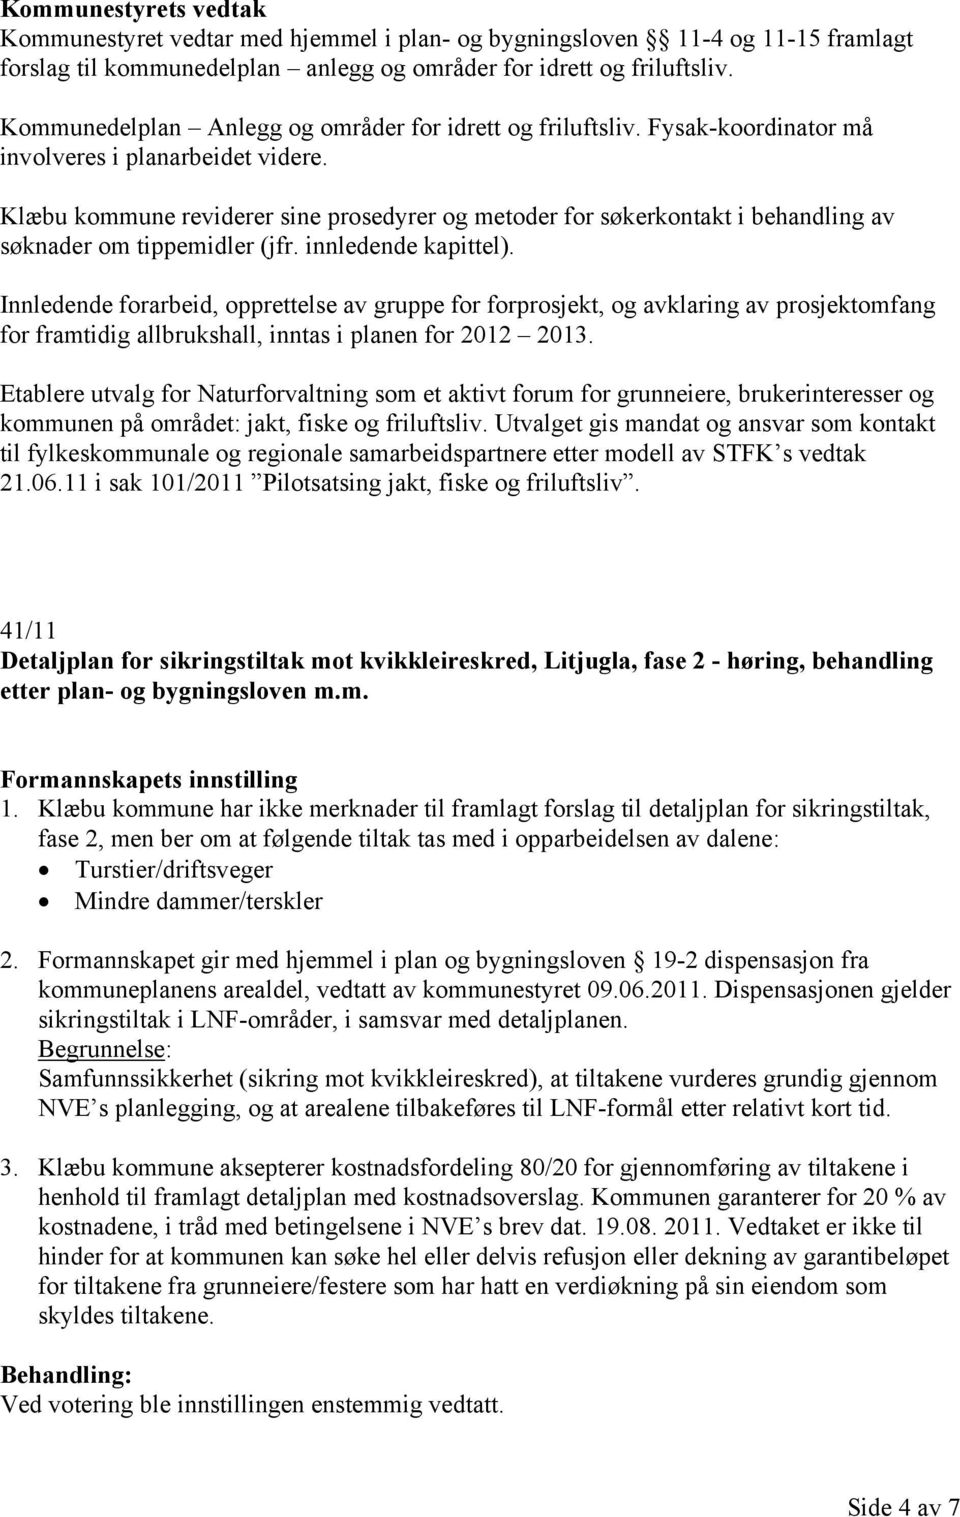 Klæbu kommune reviderer sine prosedyrer og metoder for søkerkontakt i behandling av søknader om tippemidler (jfr. innledende kapittel).